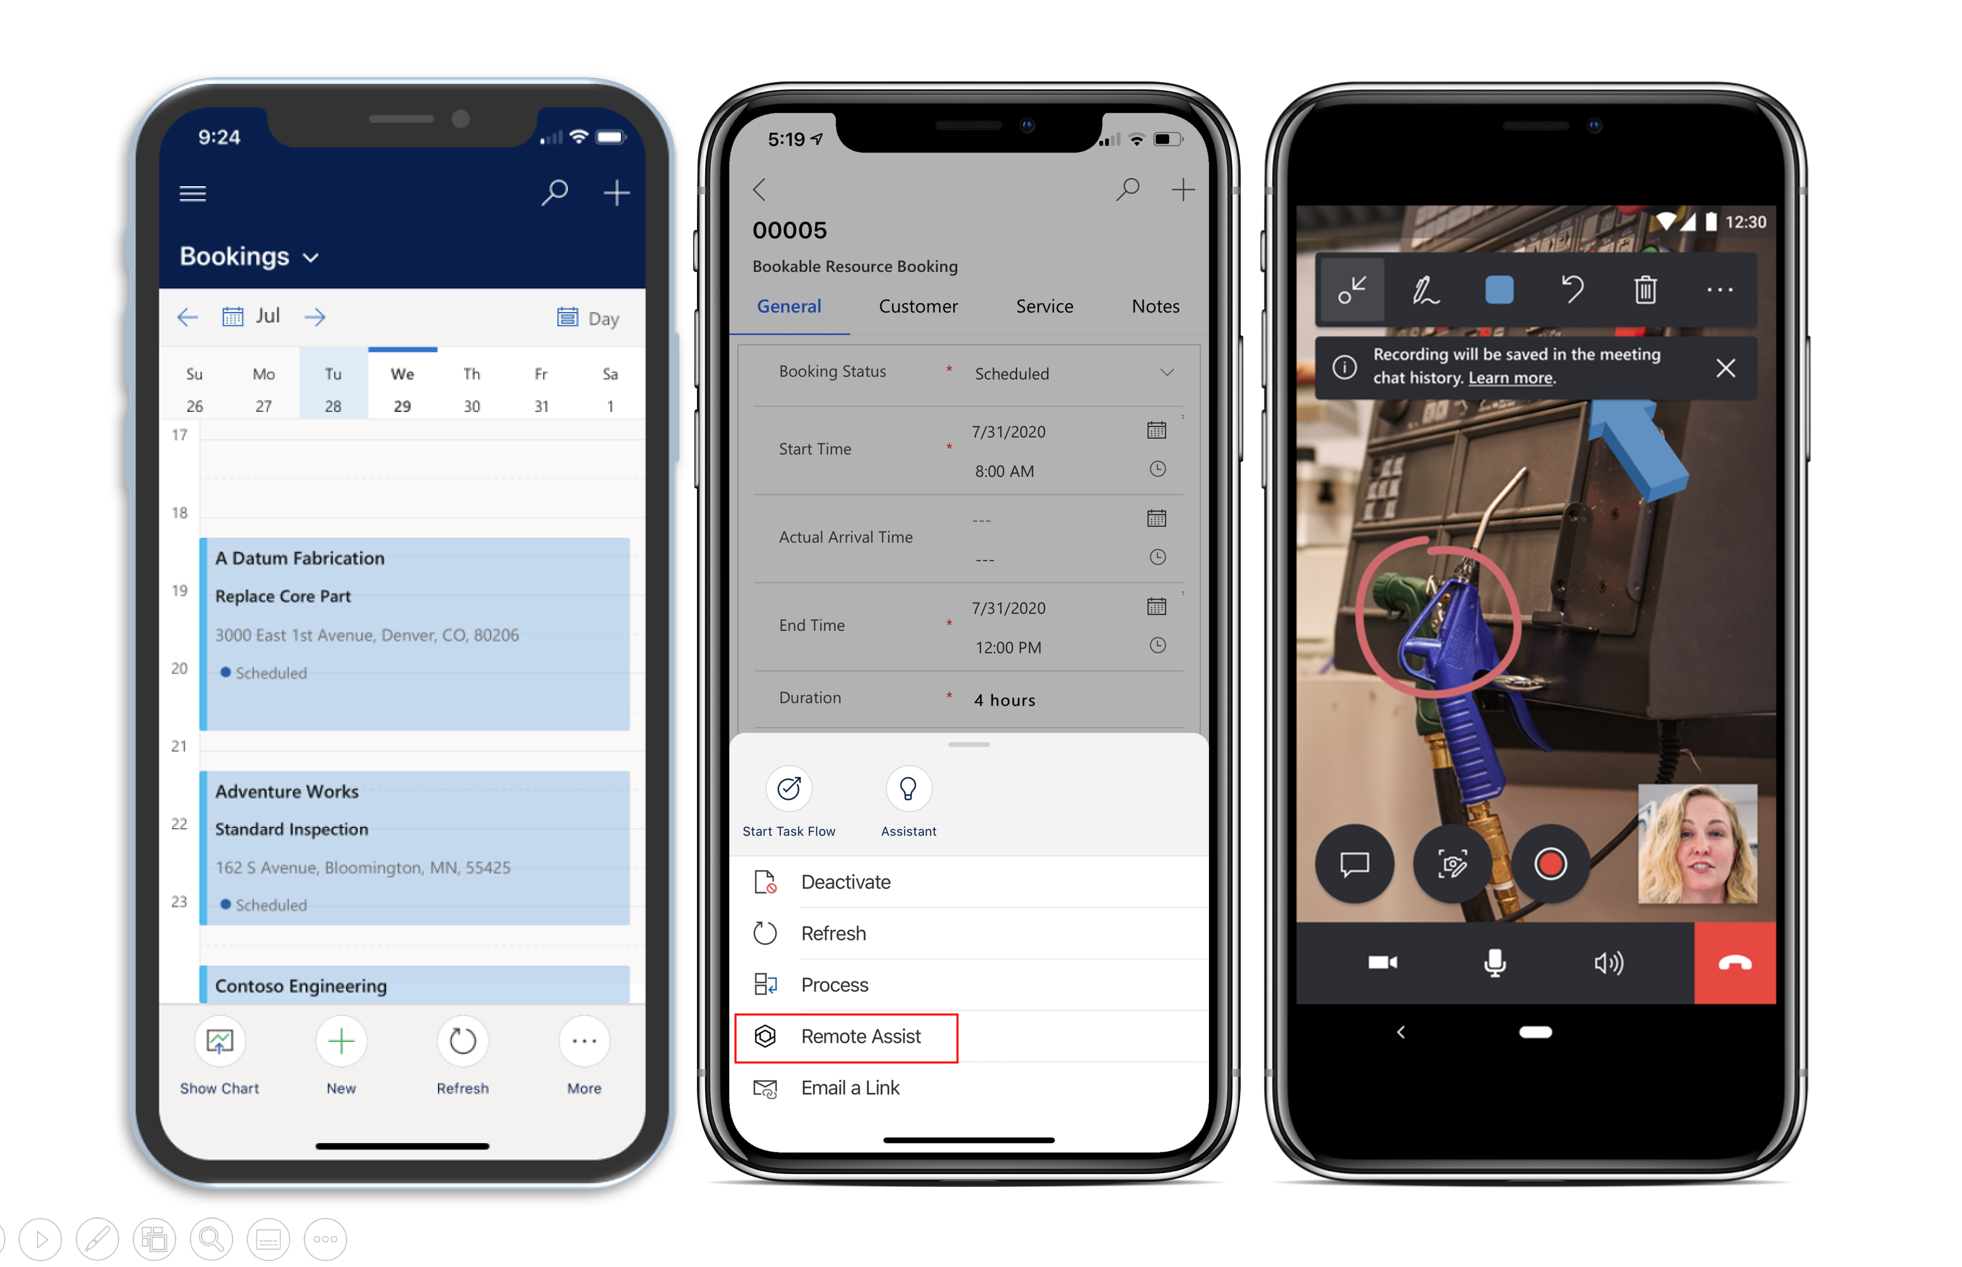 Field Service mobil uygulamasını ve Dynamics 365 Remote Assist'i başlatma seçeneğini ortaya çıkaran iş akışını gösteren dört mobil cihazın ekran görüntüsü.